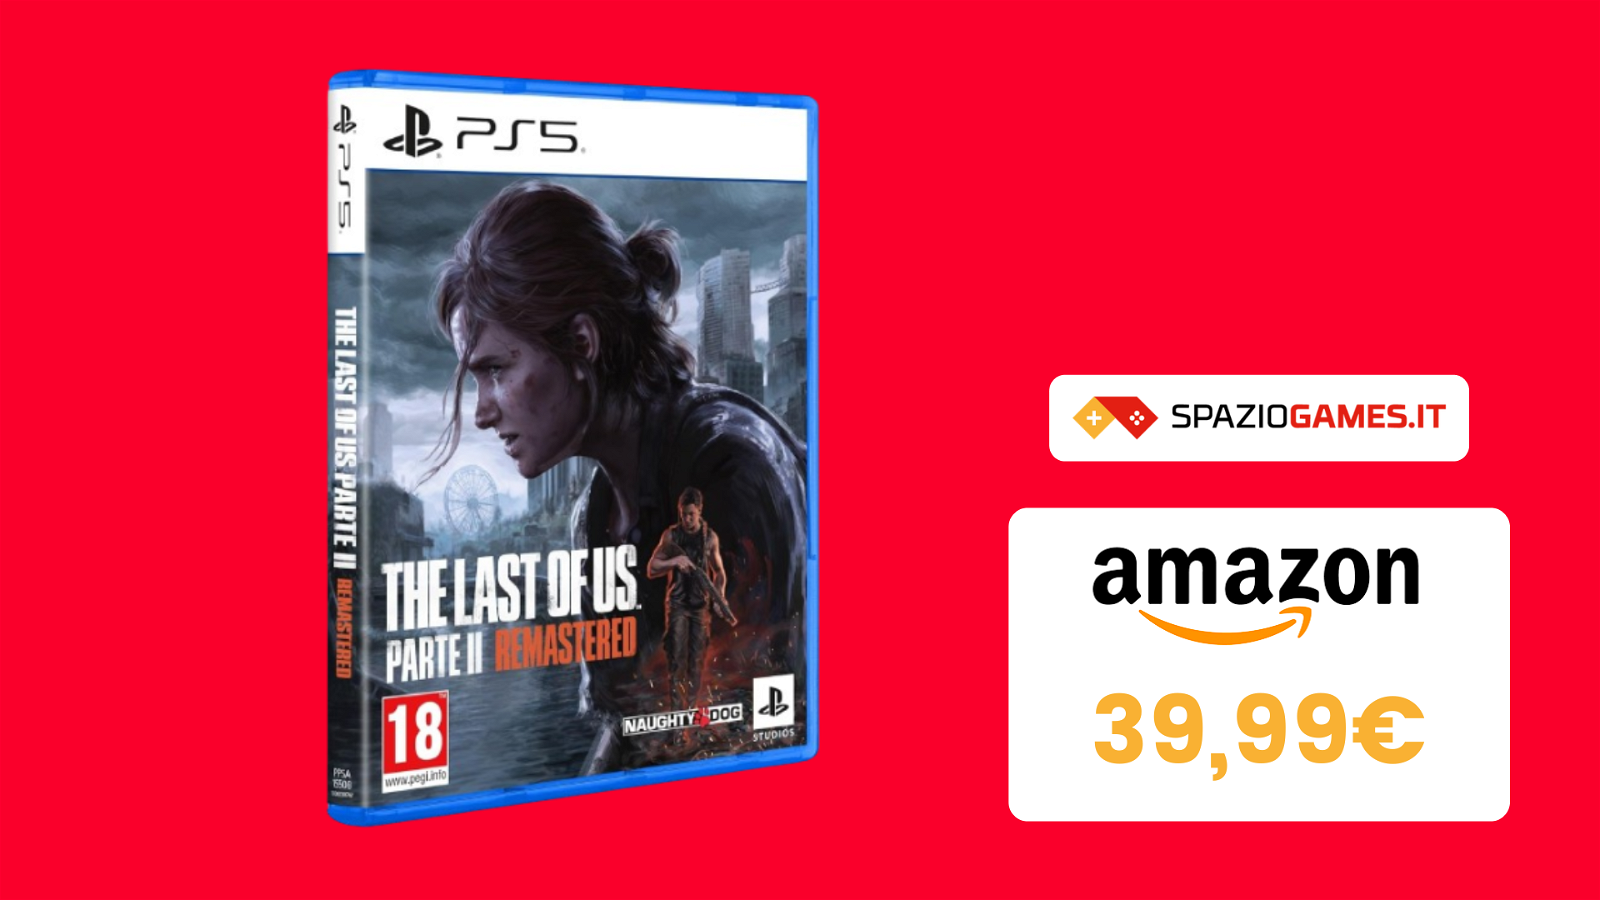 The Last of Us Parte II Remastered oggi a un prezzo SUPER! Lo paghi MENO DI 40€!